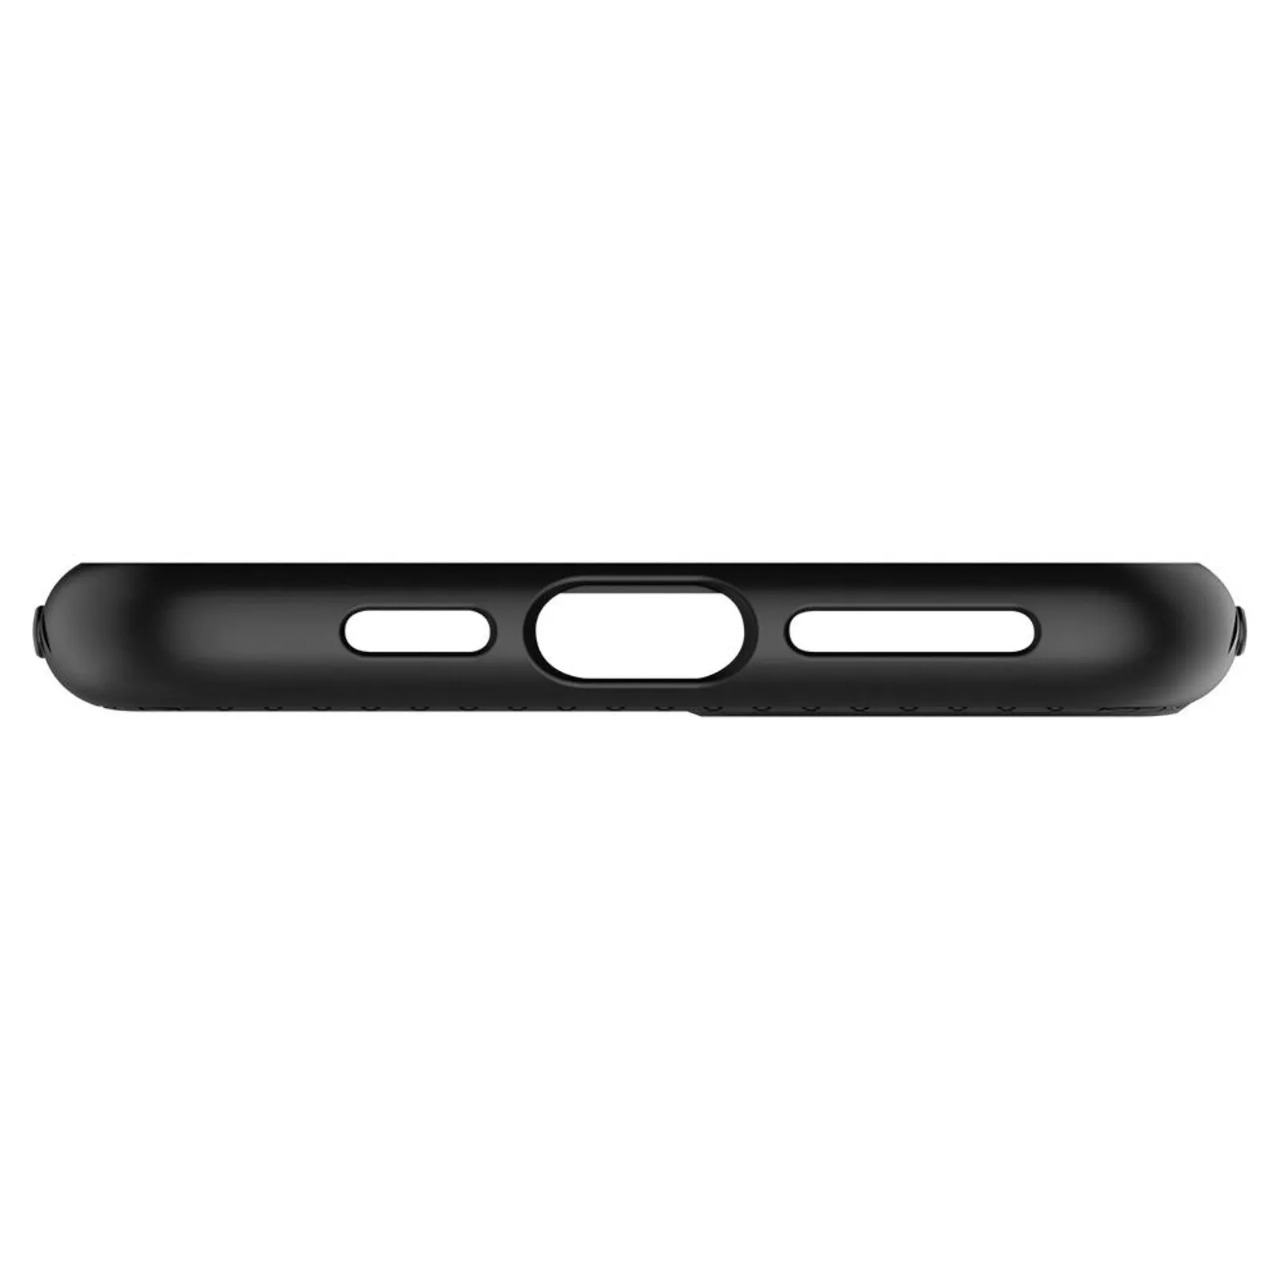 Capa Liquid Air Matte Black Compatível com iPhone 11 Pro Max